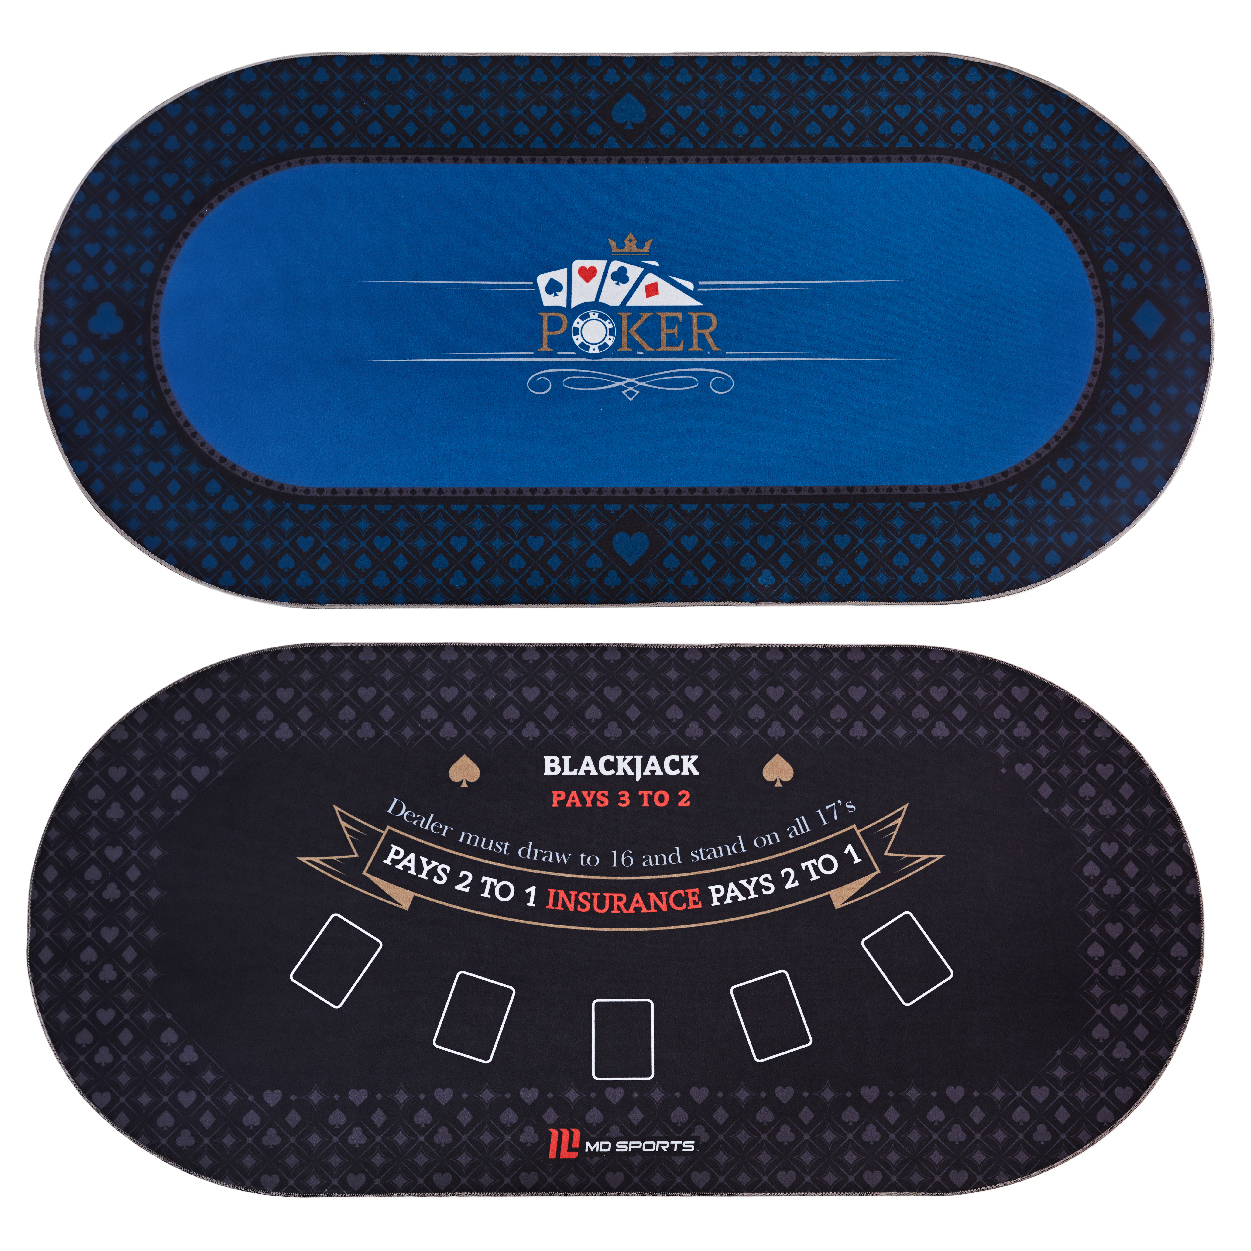 Blackjack Portable Rubber Non-Slip Poker Table Top w/Carrying Bag for Poker Games Casino Giantex 8 Player Poker Mat 